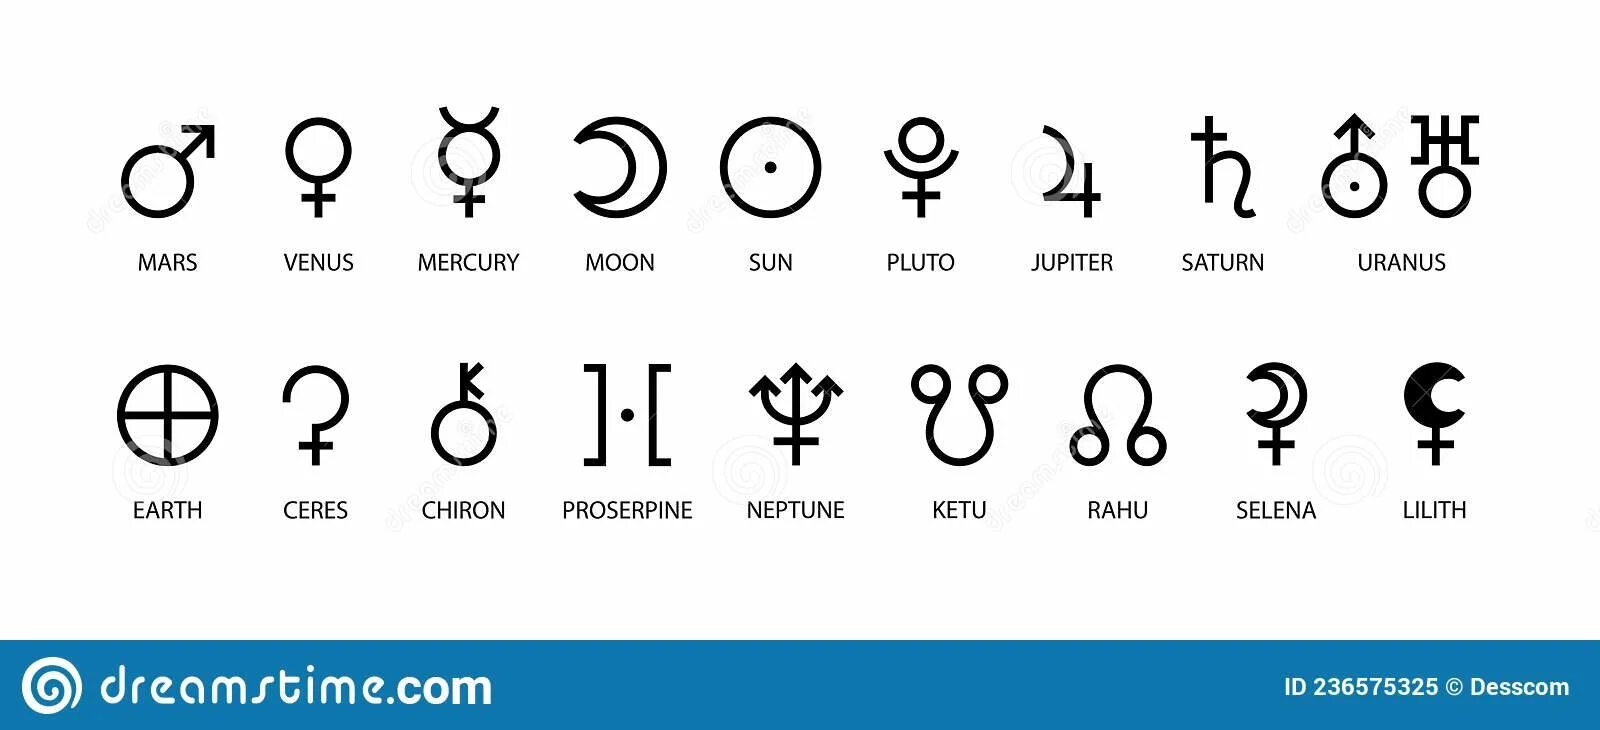 Уран какой знак. Марс Планета в астрологии значок. Прозерпина Планета знак. Плутон Планета знак. Меркурий Планета знак в астрологии.